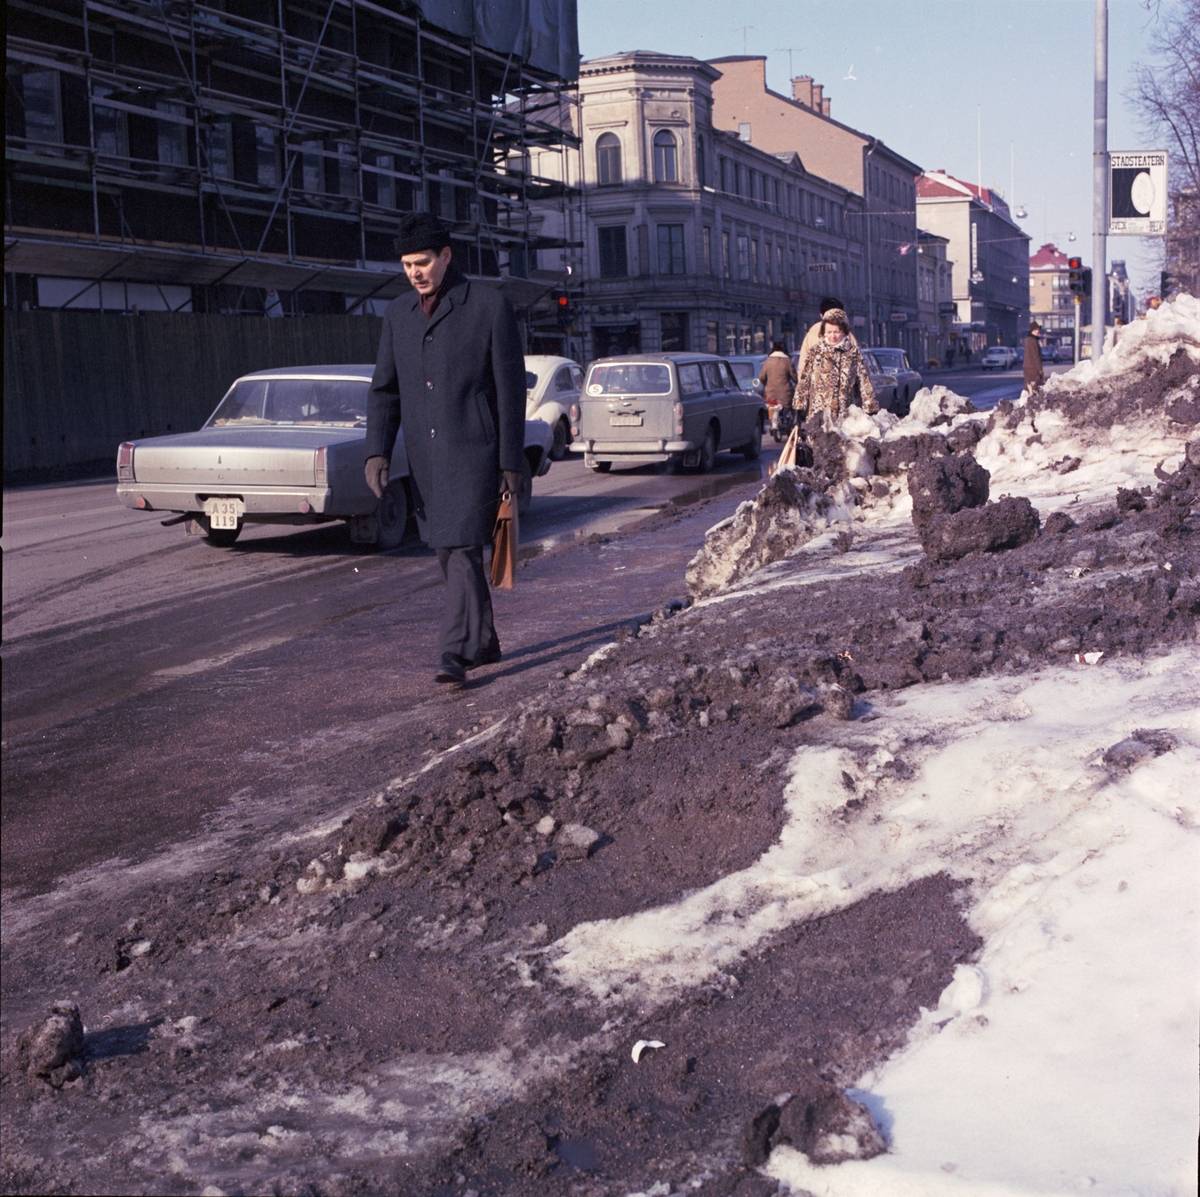 Trafik på Kungsgatan, Uppsala 1970